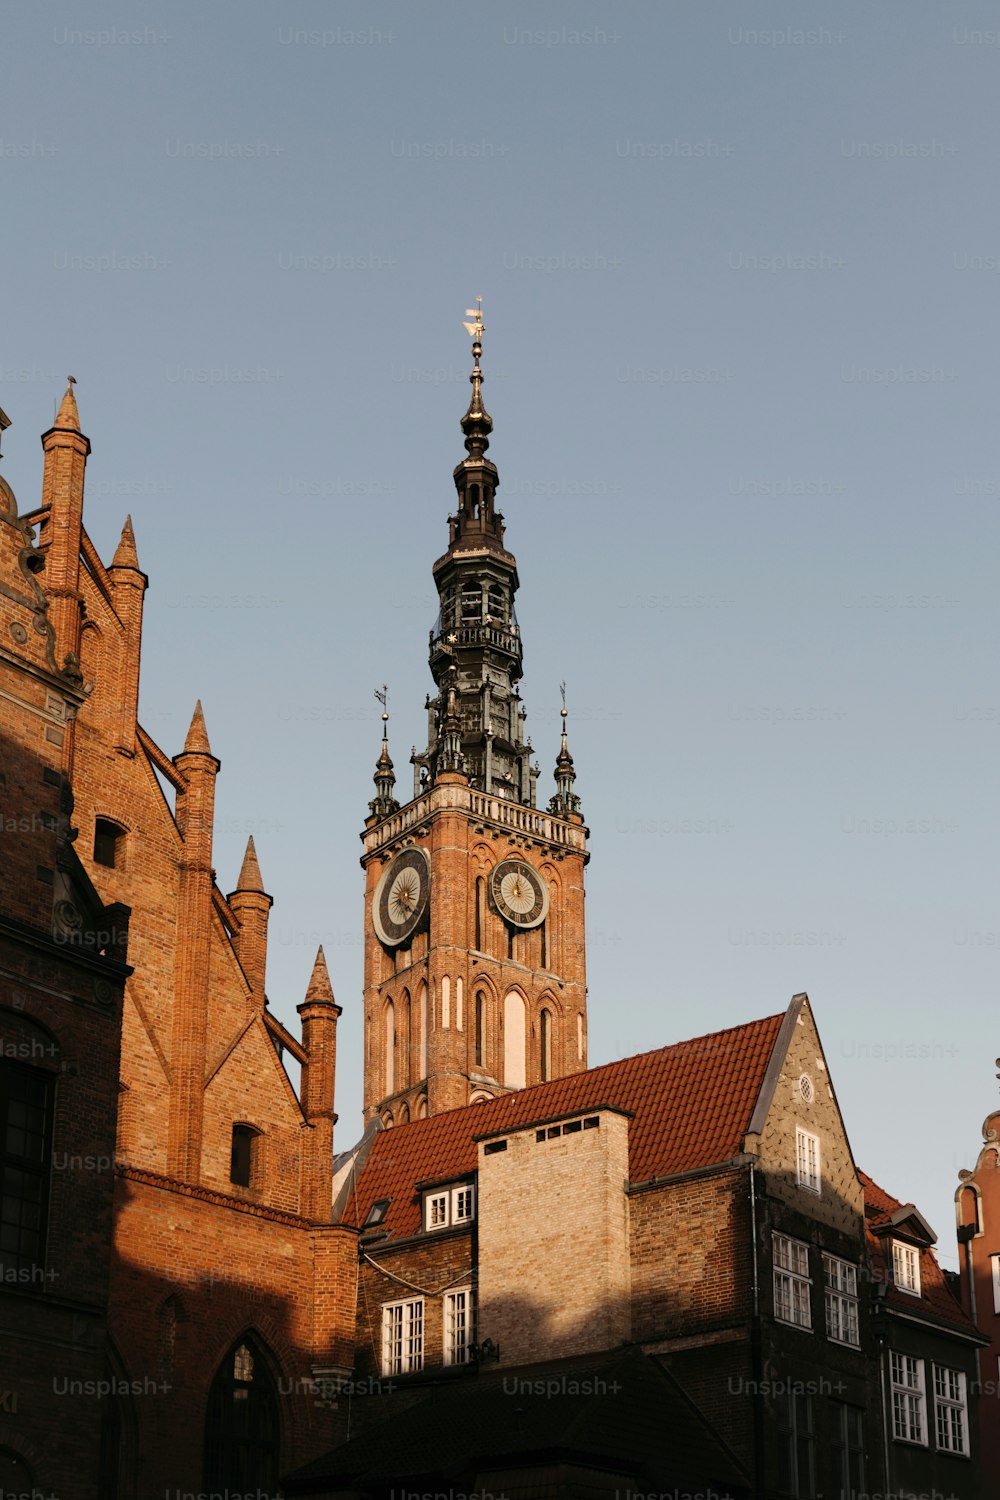 Un edificio alto con una torre dell'orologio in cima